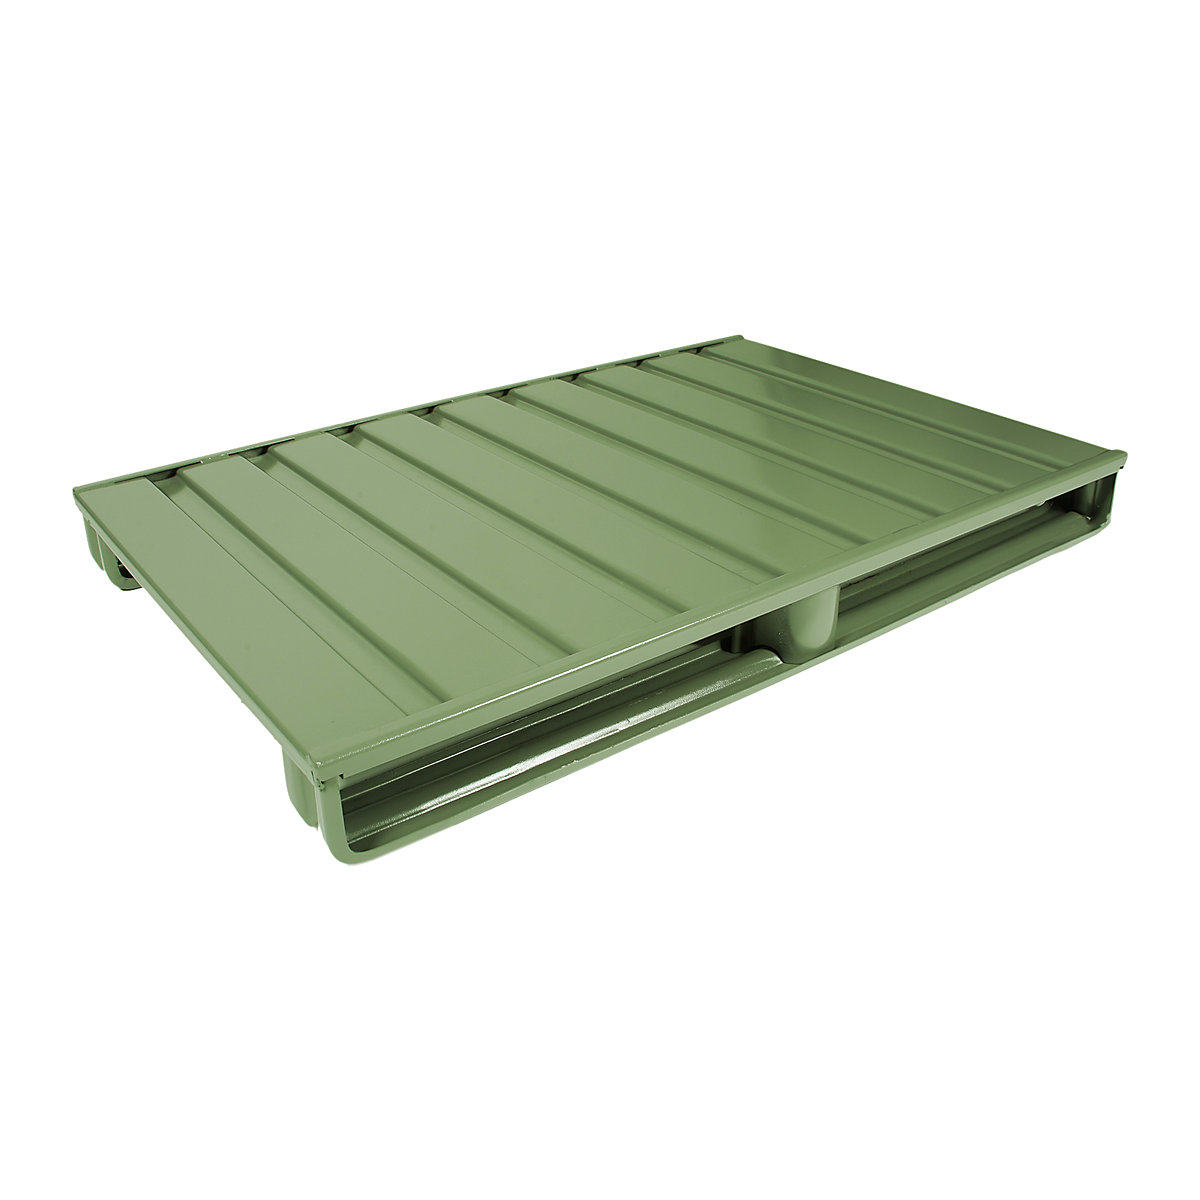 Ploska jeklena paleta – Heson, DxŠ 1200 x 1000 mm, nosilnost 1500 kg, reseda zelene barve-3